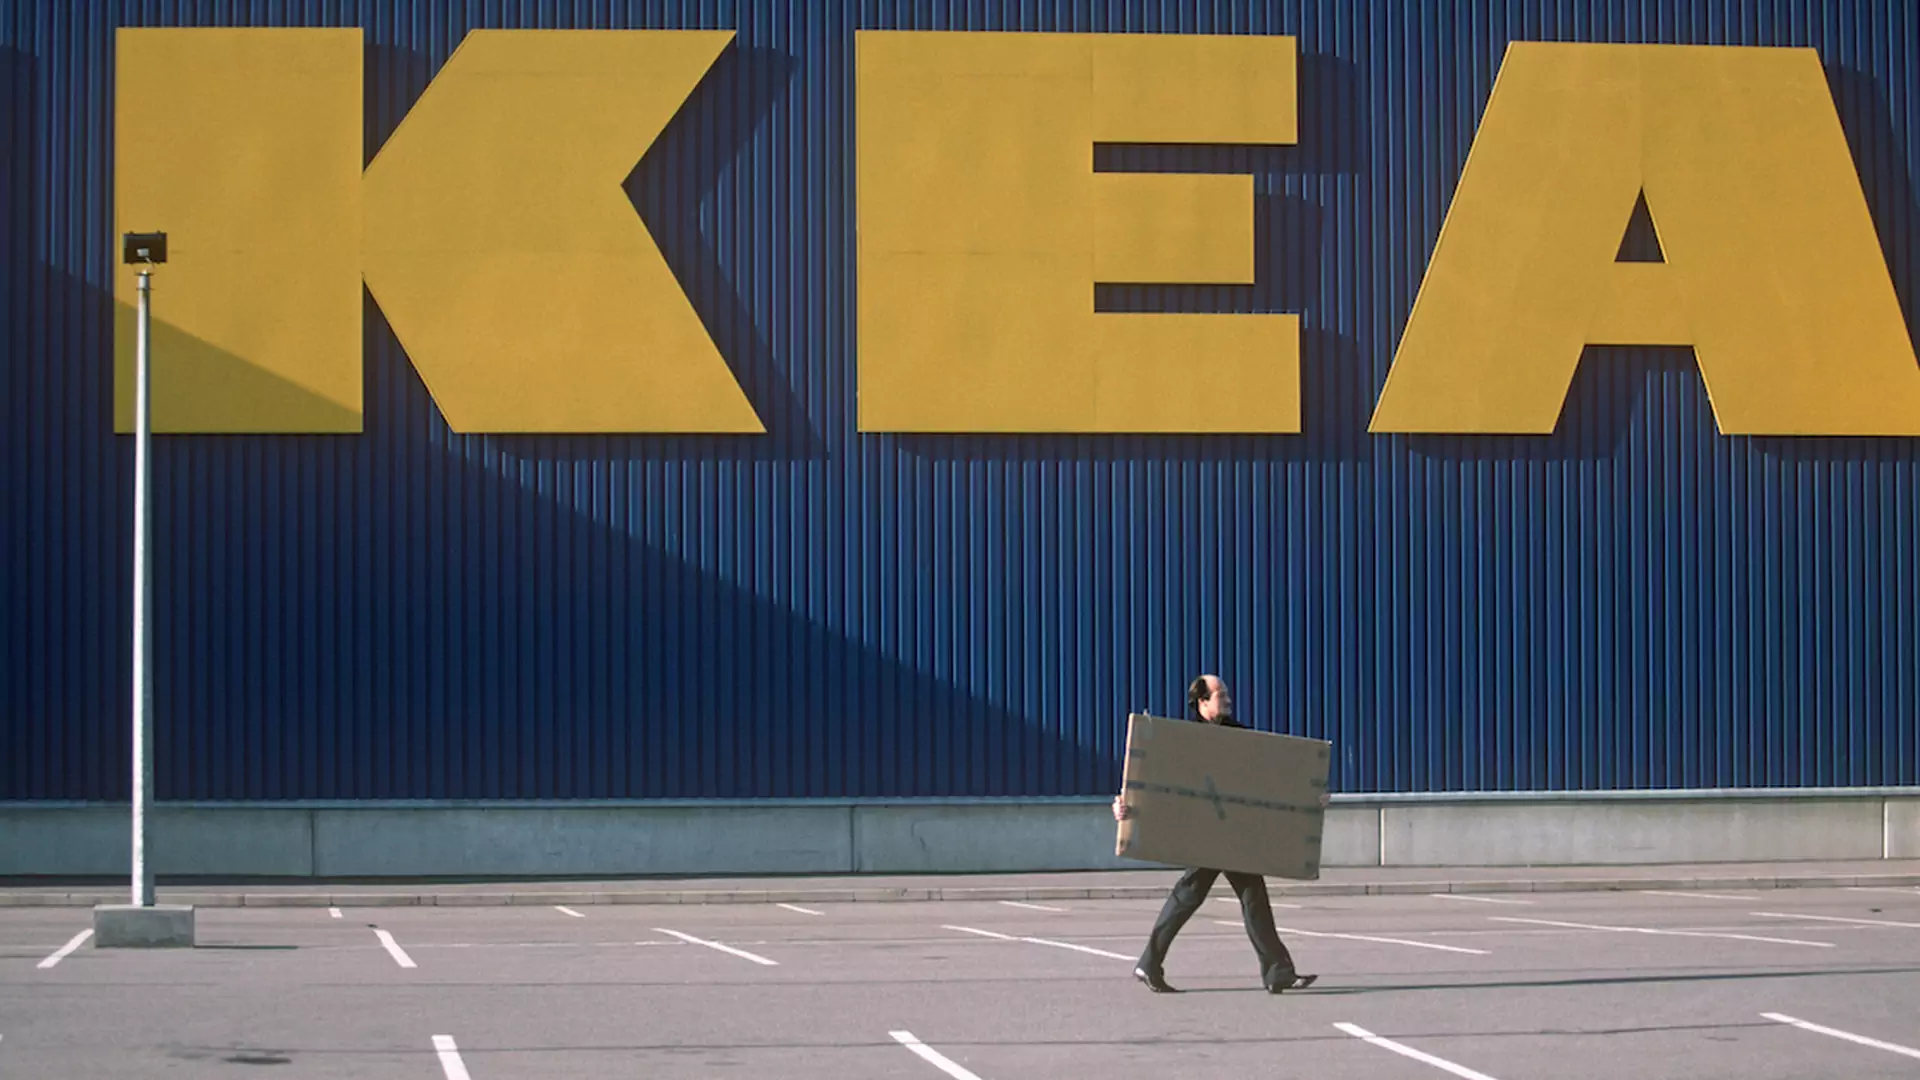 Polacy przetestują wynajem mebli IKEA już w 2019 roku